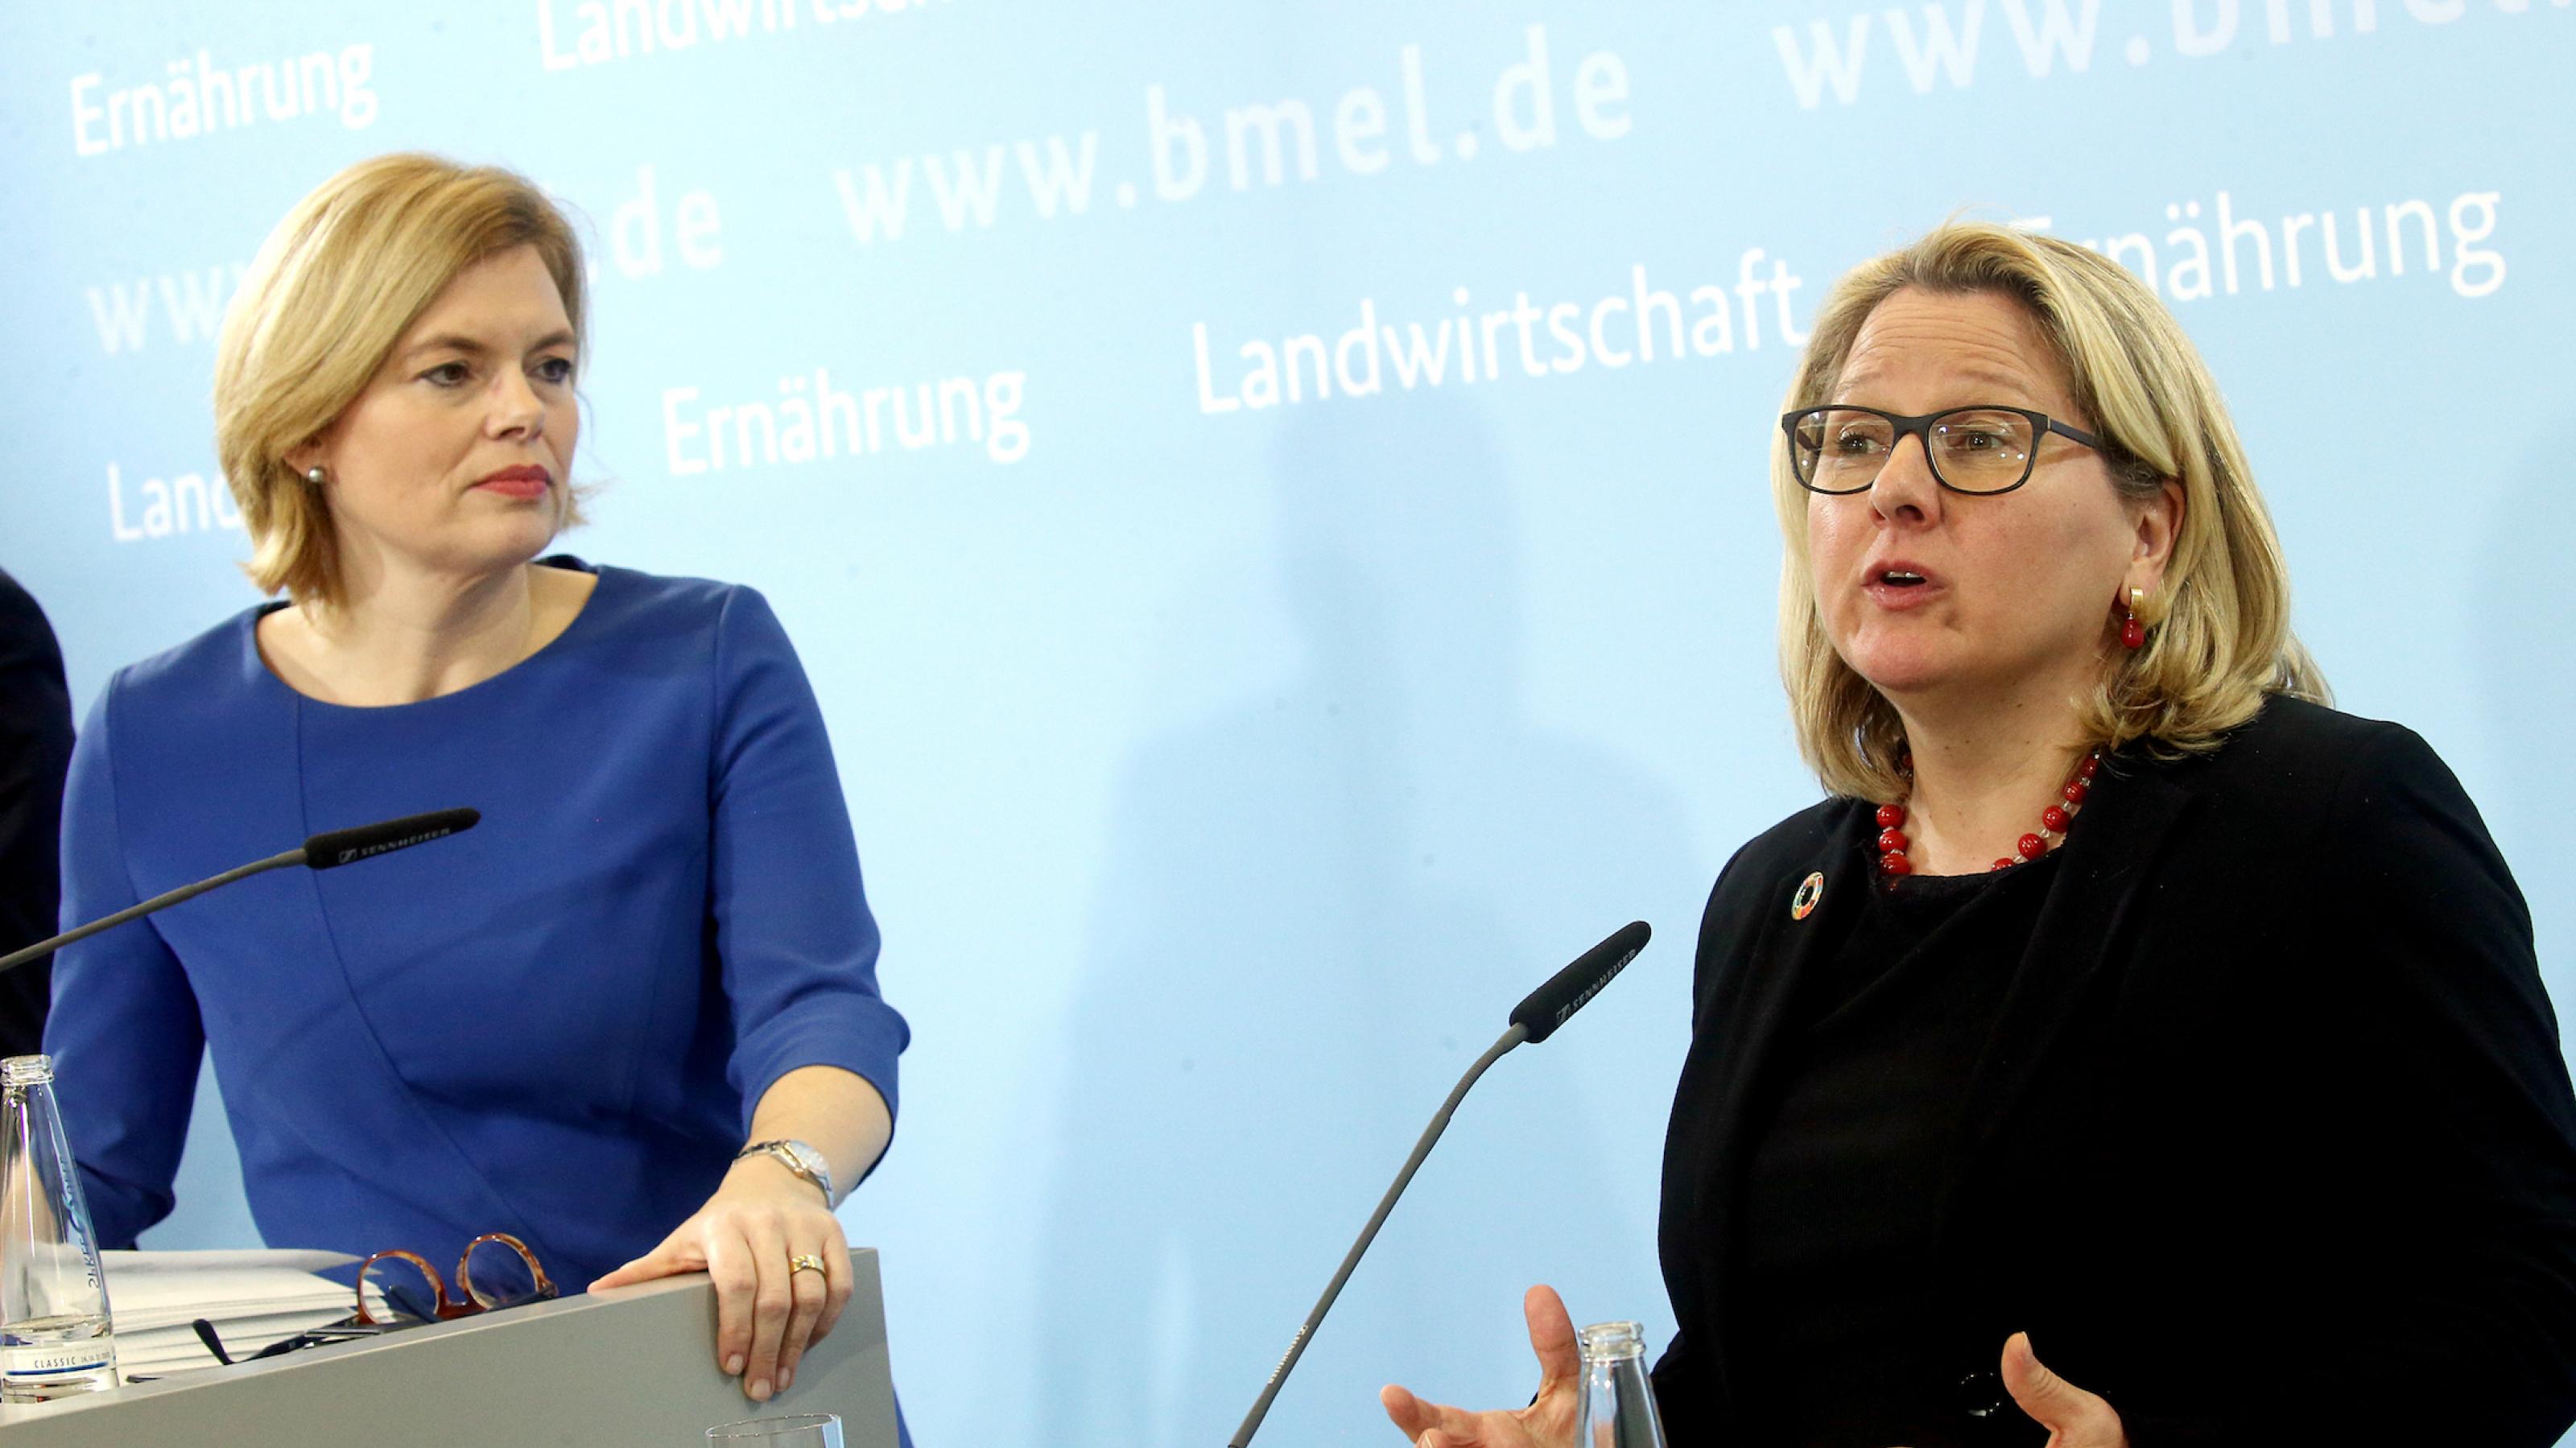 Das Bild zeigt die beiden Ministerinnen vor einer hellblauen Stellwand an Mikrofonen. Klöckner schaut Schulze beim Reden zu, Schulze gestikuliert.